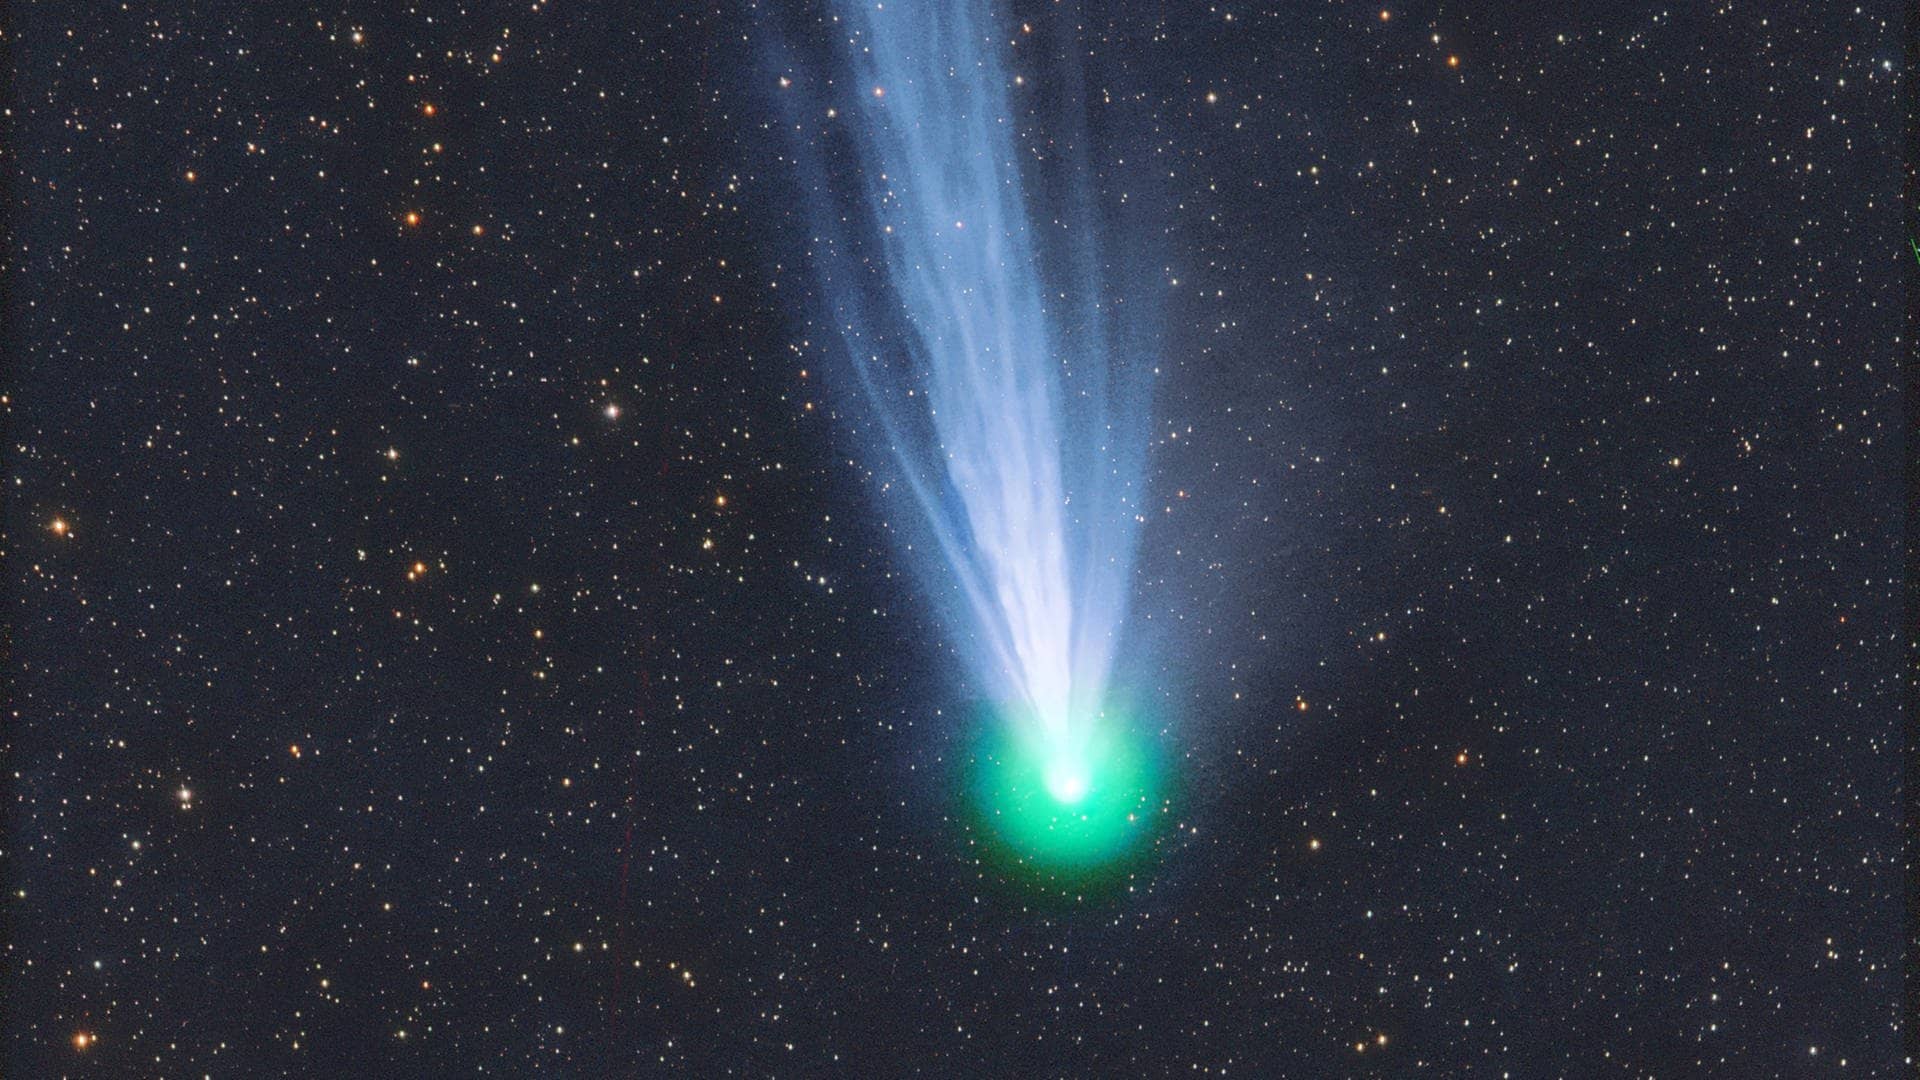 Spektakel am Himmel: So seht ihr den Kometen über SWR3Land am besten ☄️